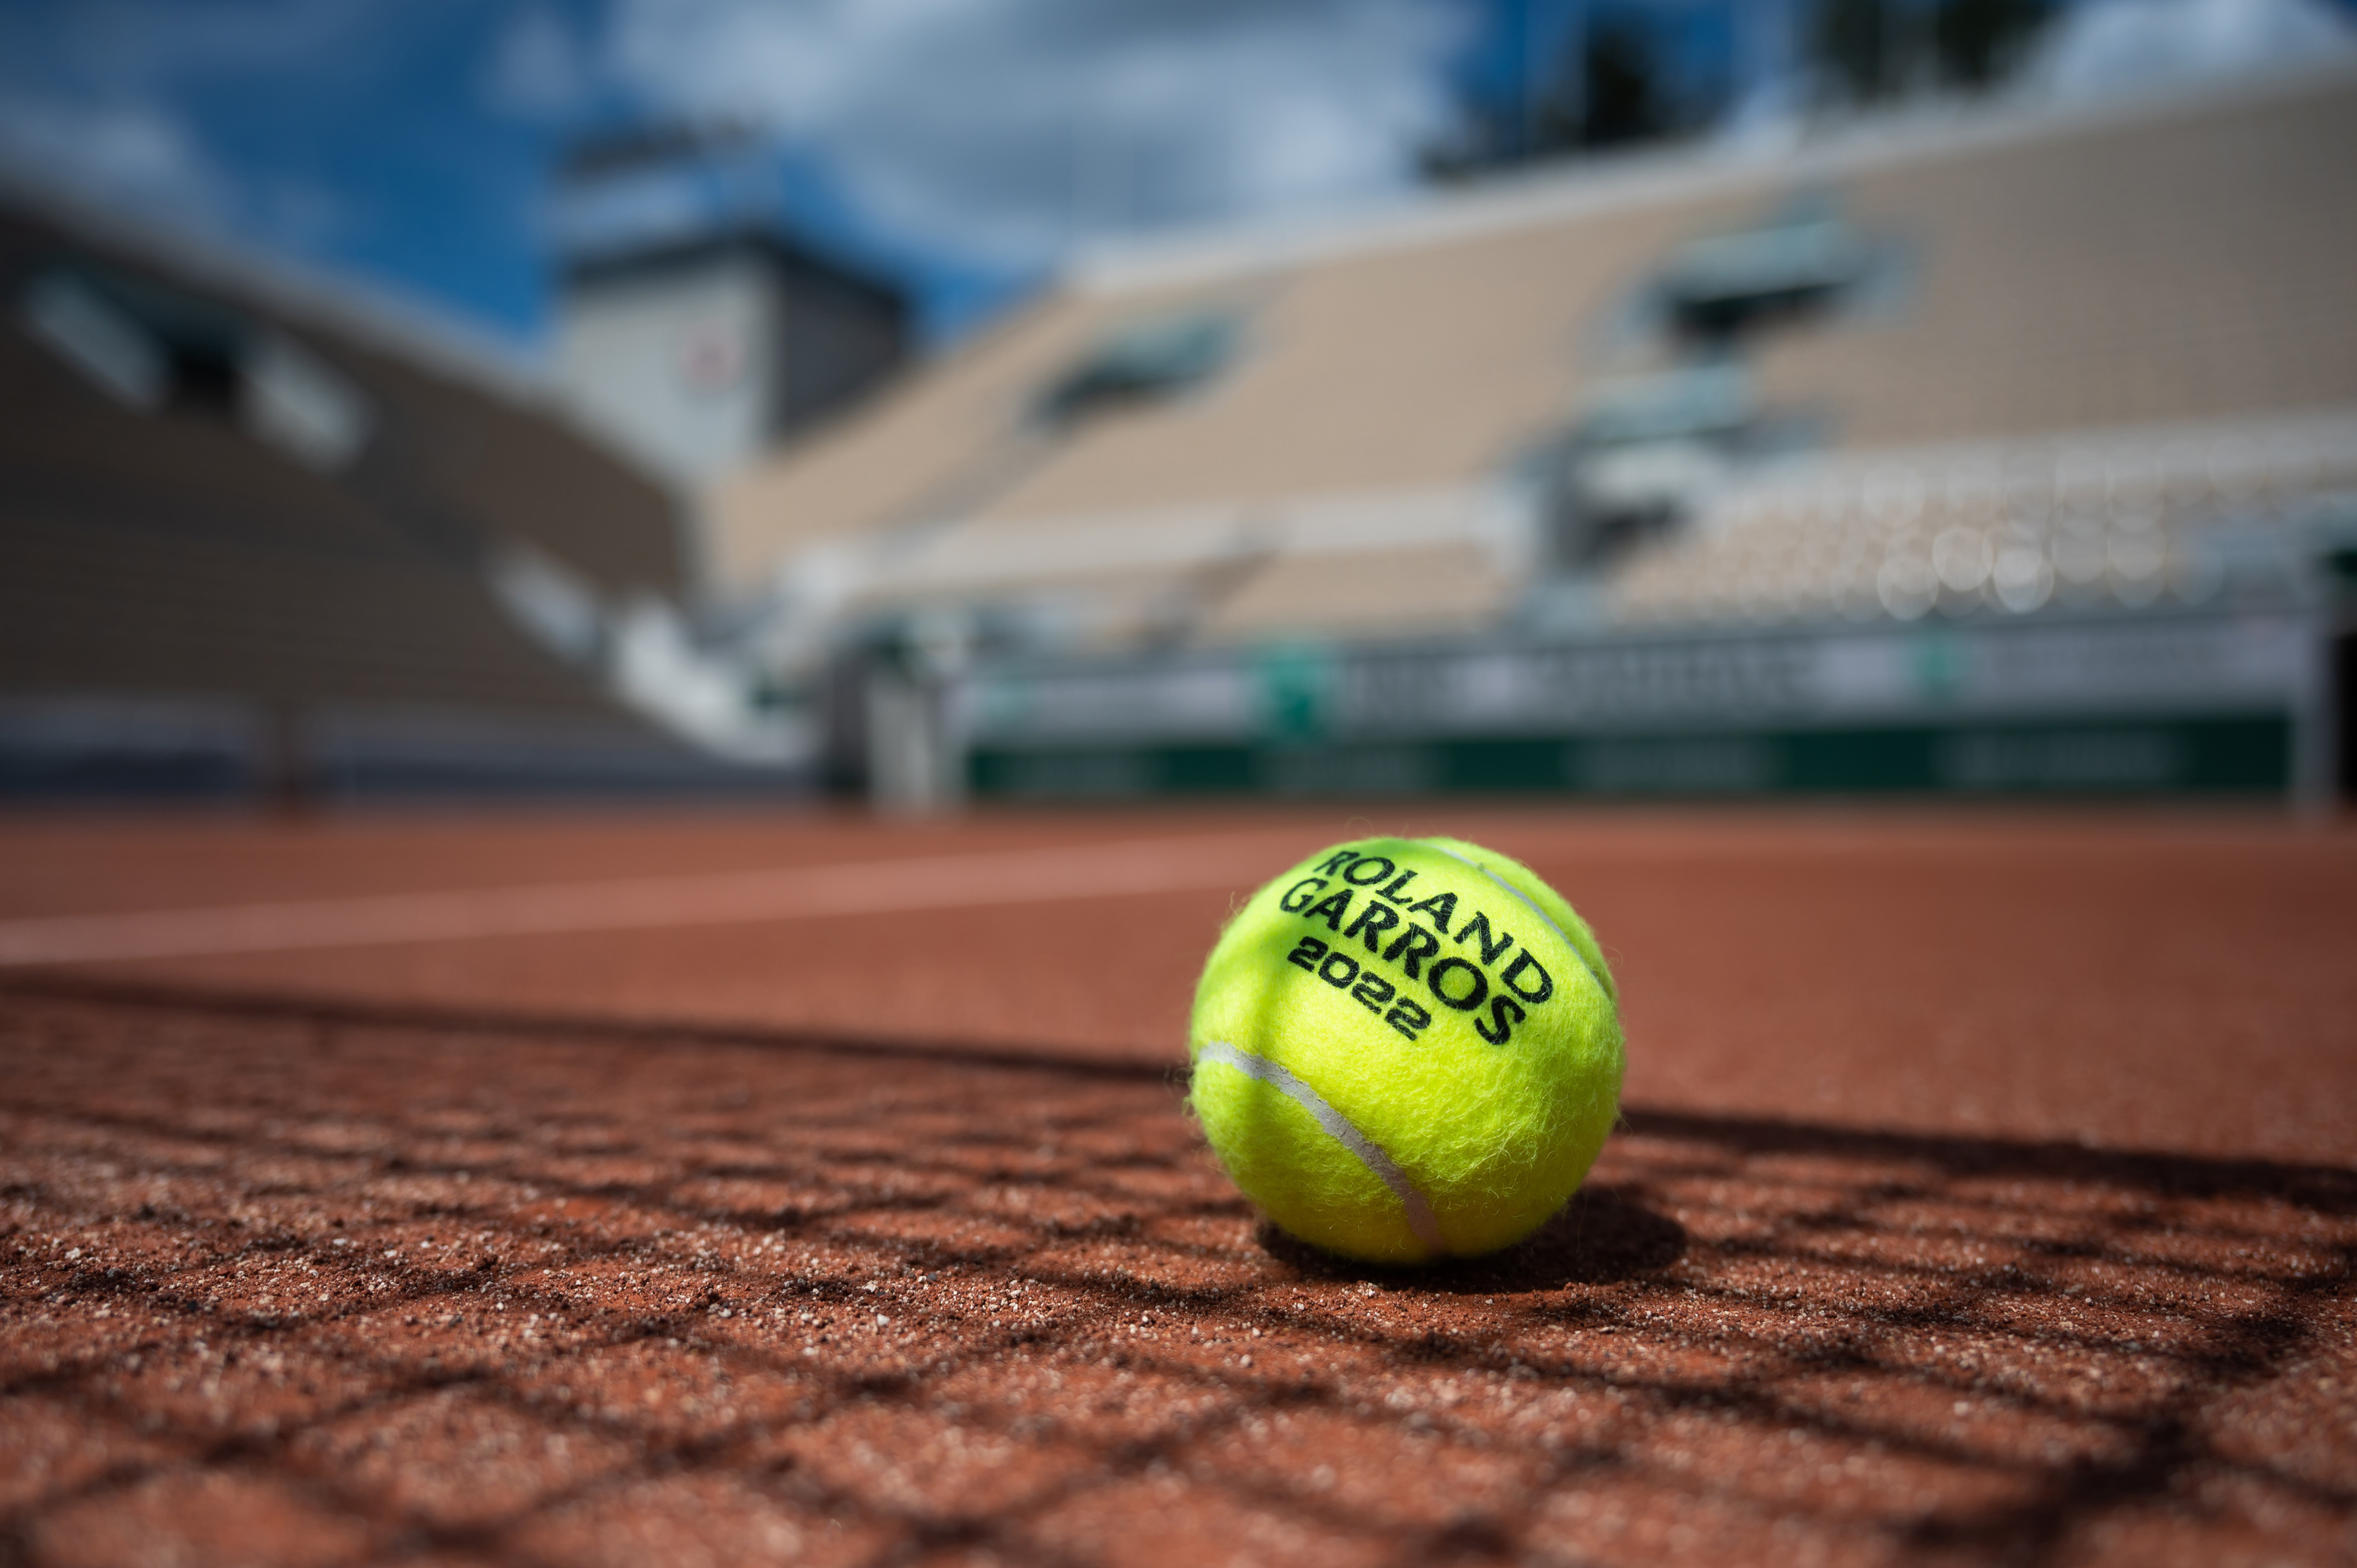 Roland-Garros 2022 wildcards announced - Roland-Garros